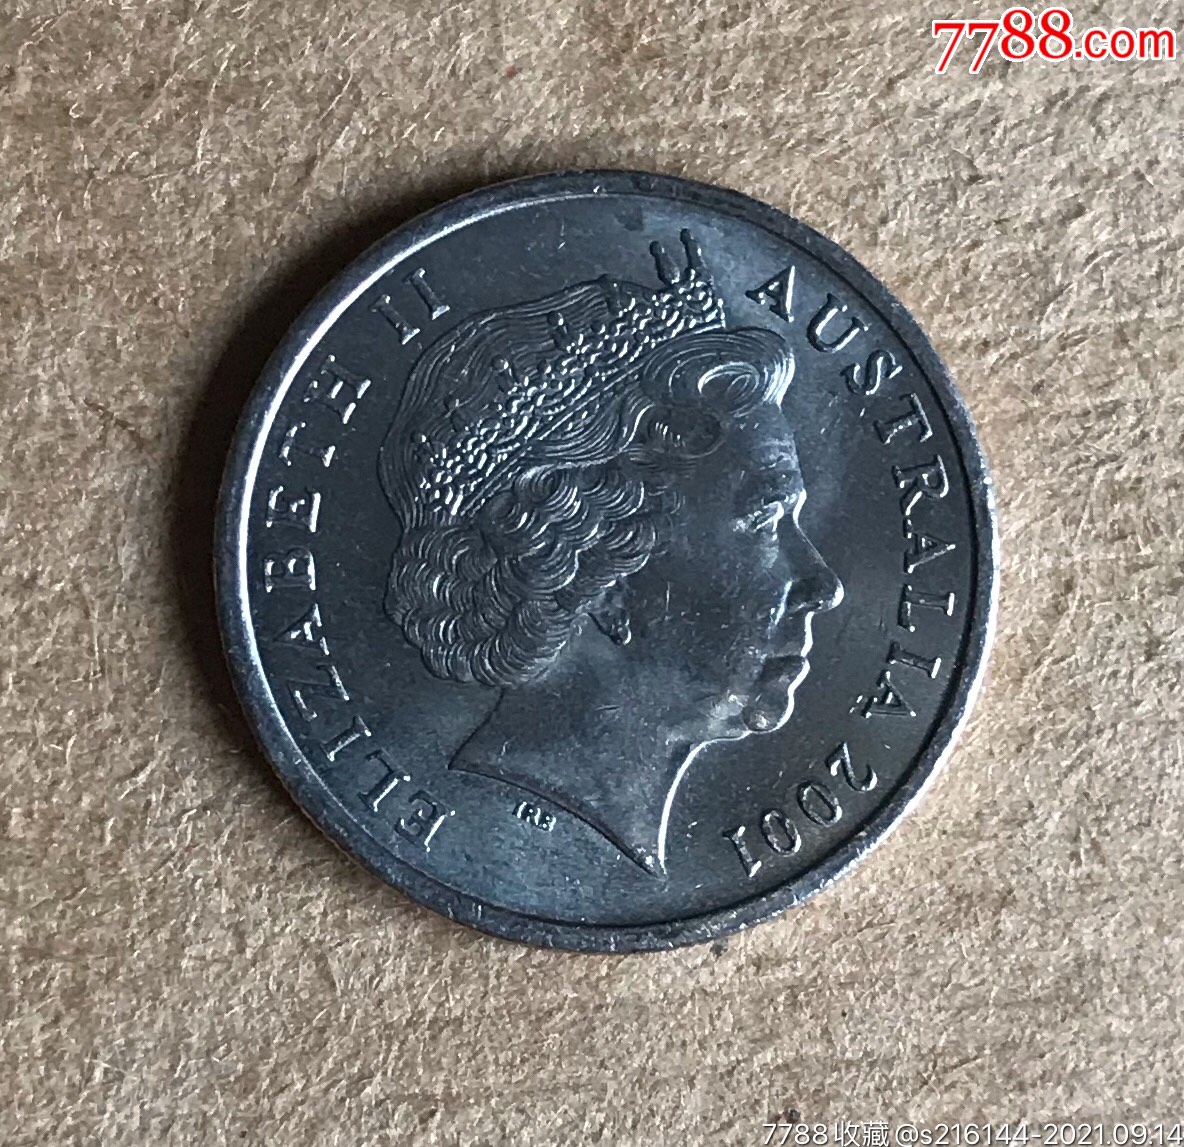 2001年澳大利亚硬币5分/鼹